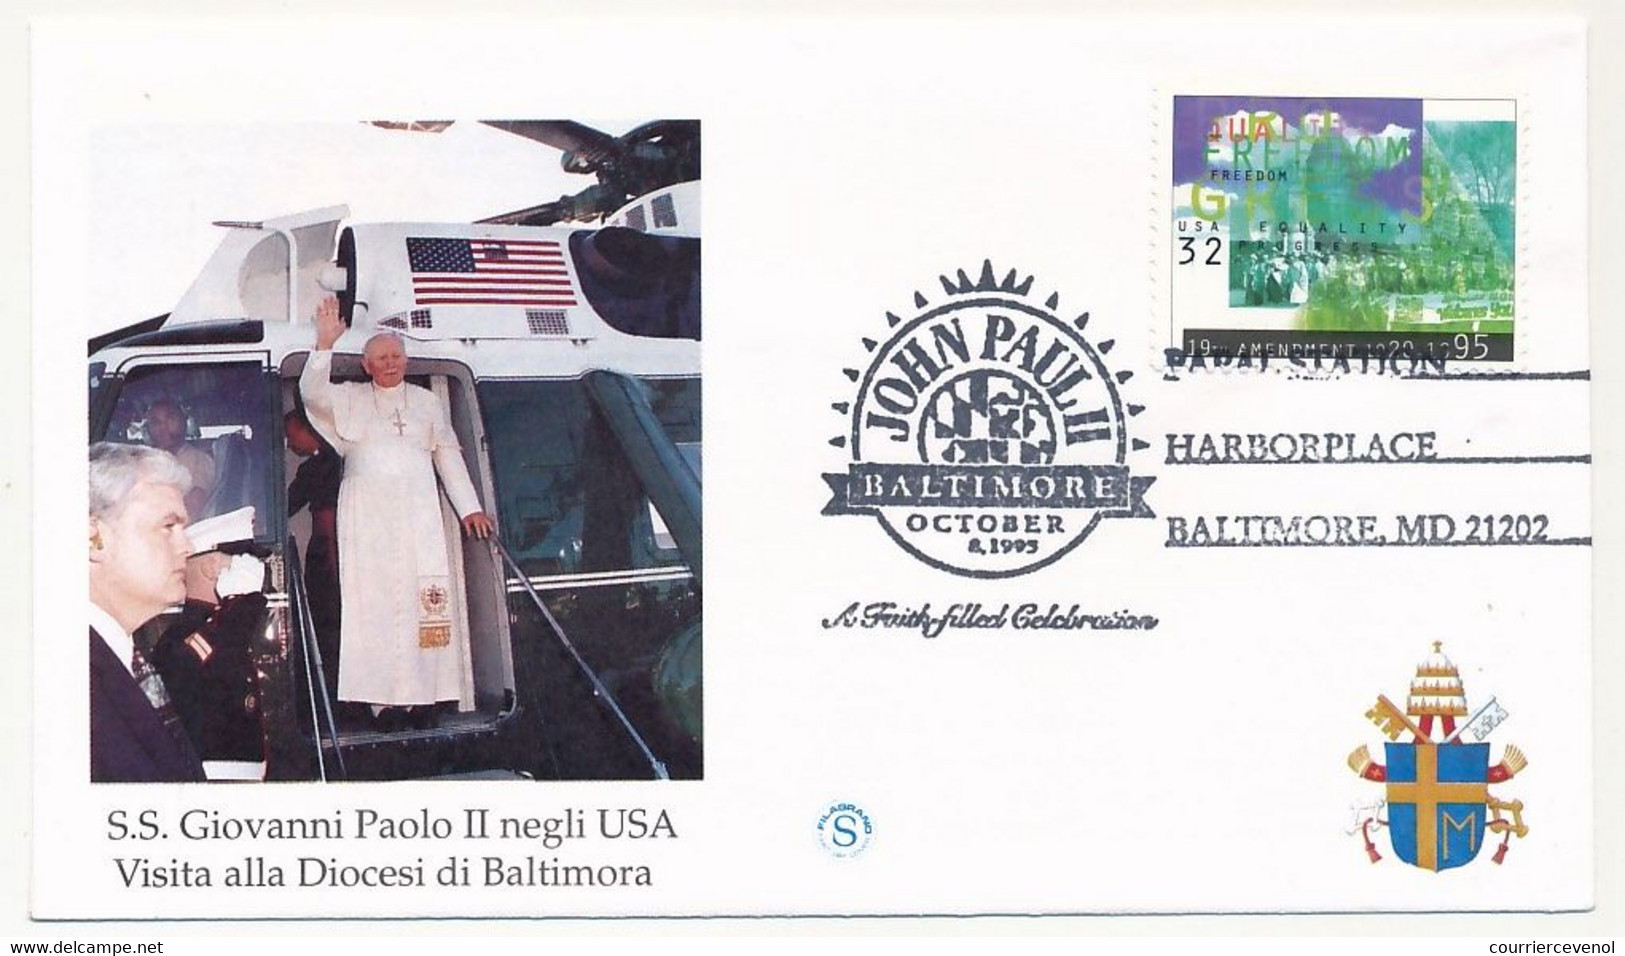 ETATS UNIS - 5 Env. Illustrées - Voyage Du Pape Jean Paul II Aux Etats Unis (Baltimore, New York, ONU) 1995 - Briefe U. Dokumente